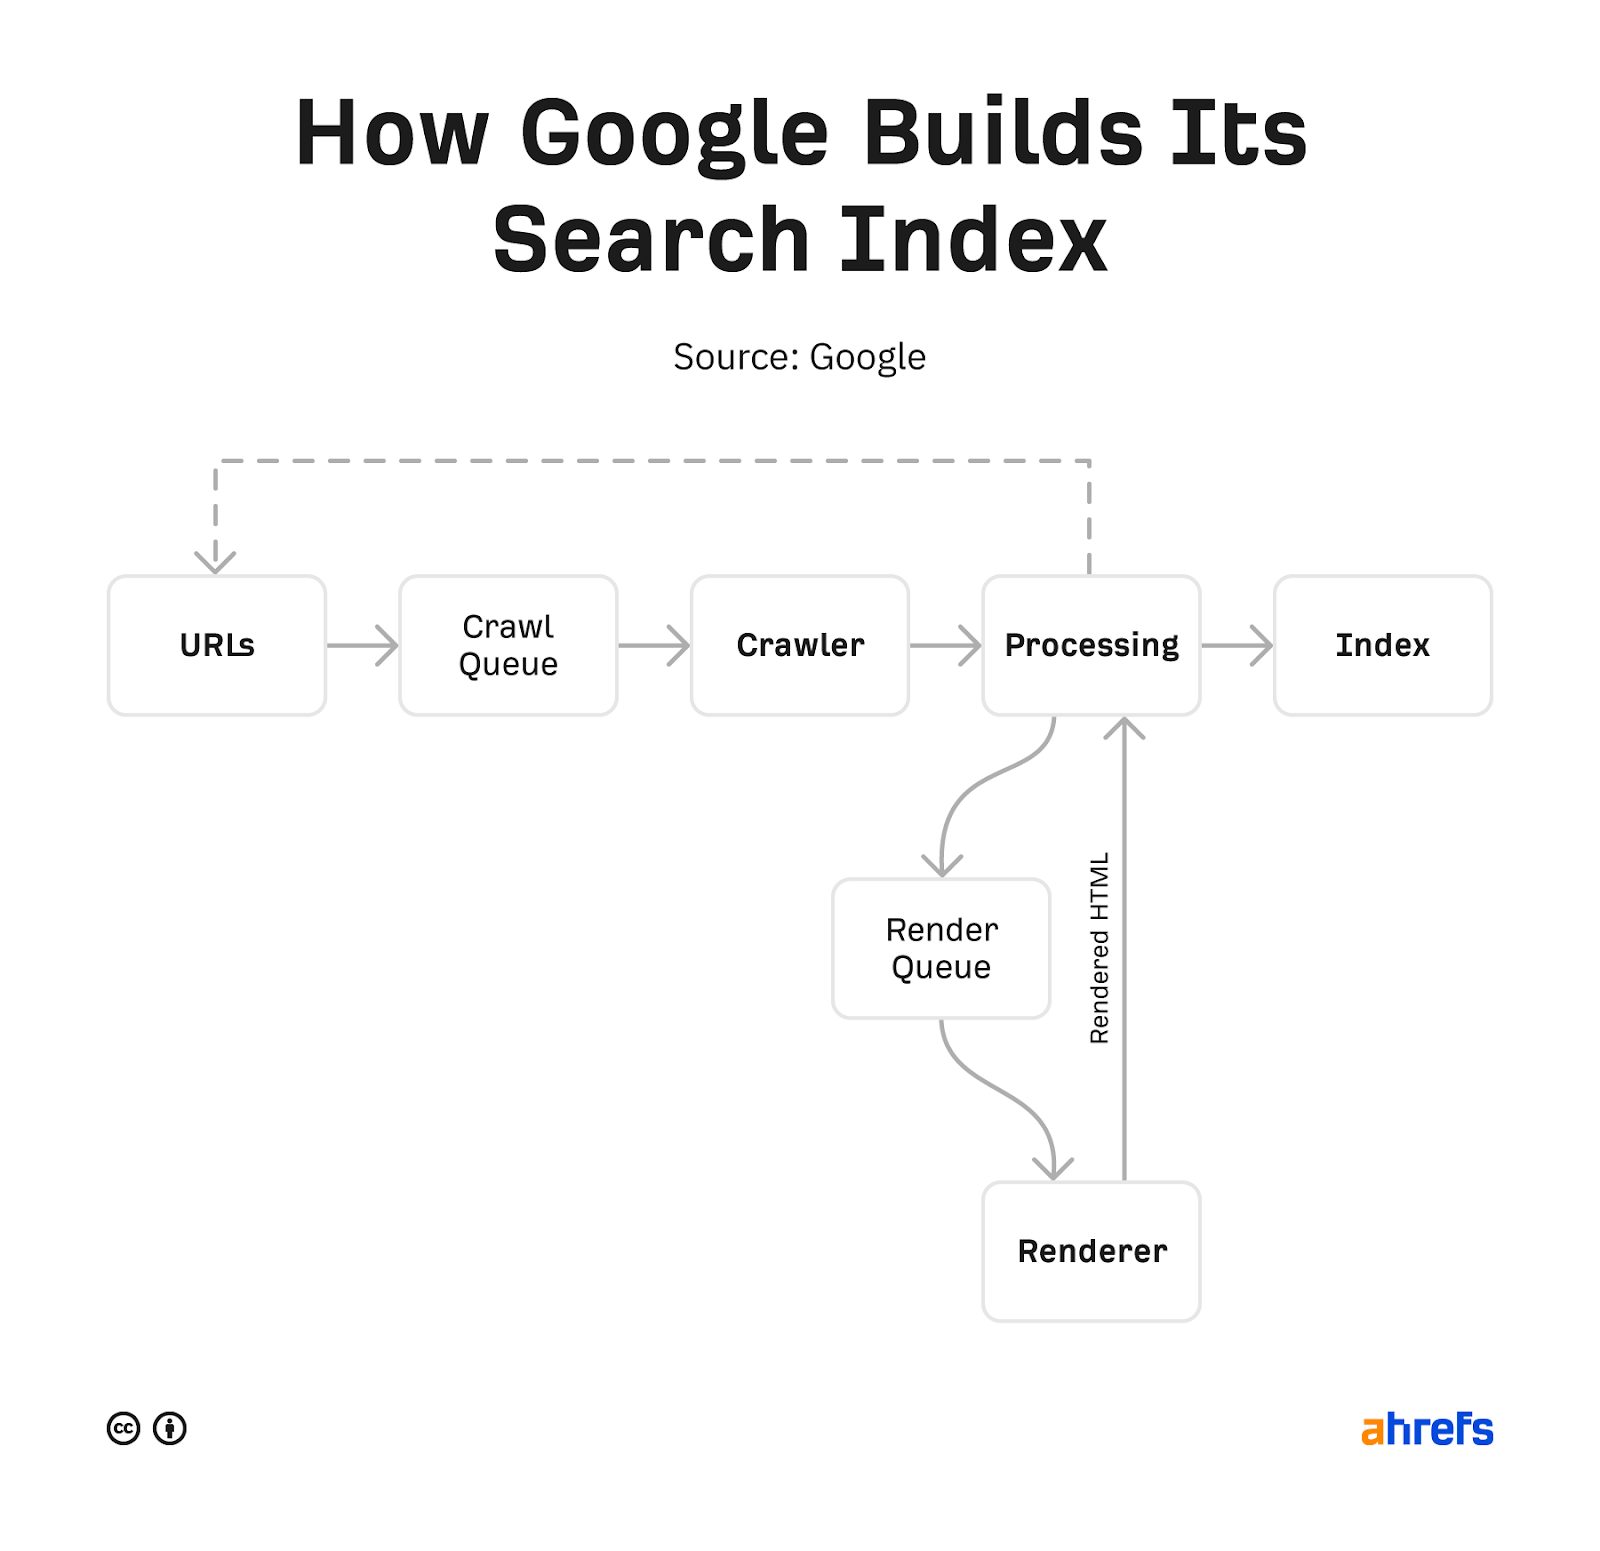 فلوچارتی که نشان می دهد گوگل چگونه فهرست جستجوی خود را ایجاد می کند